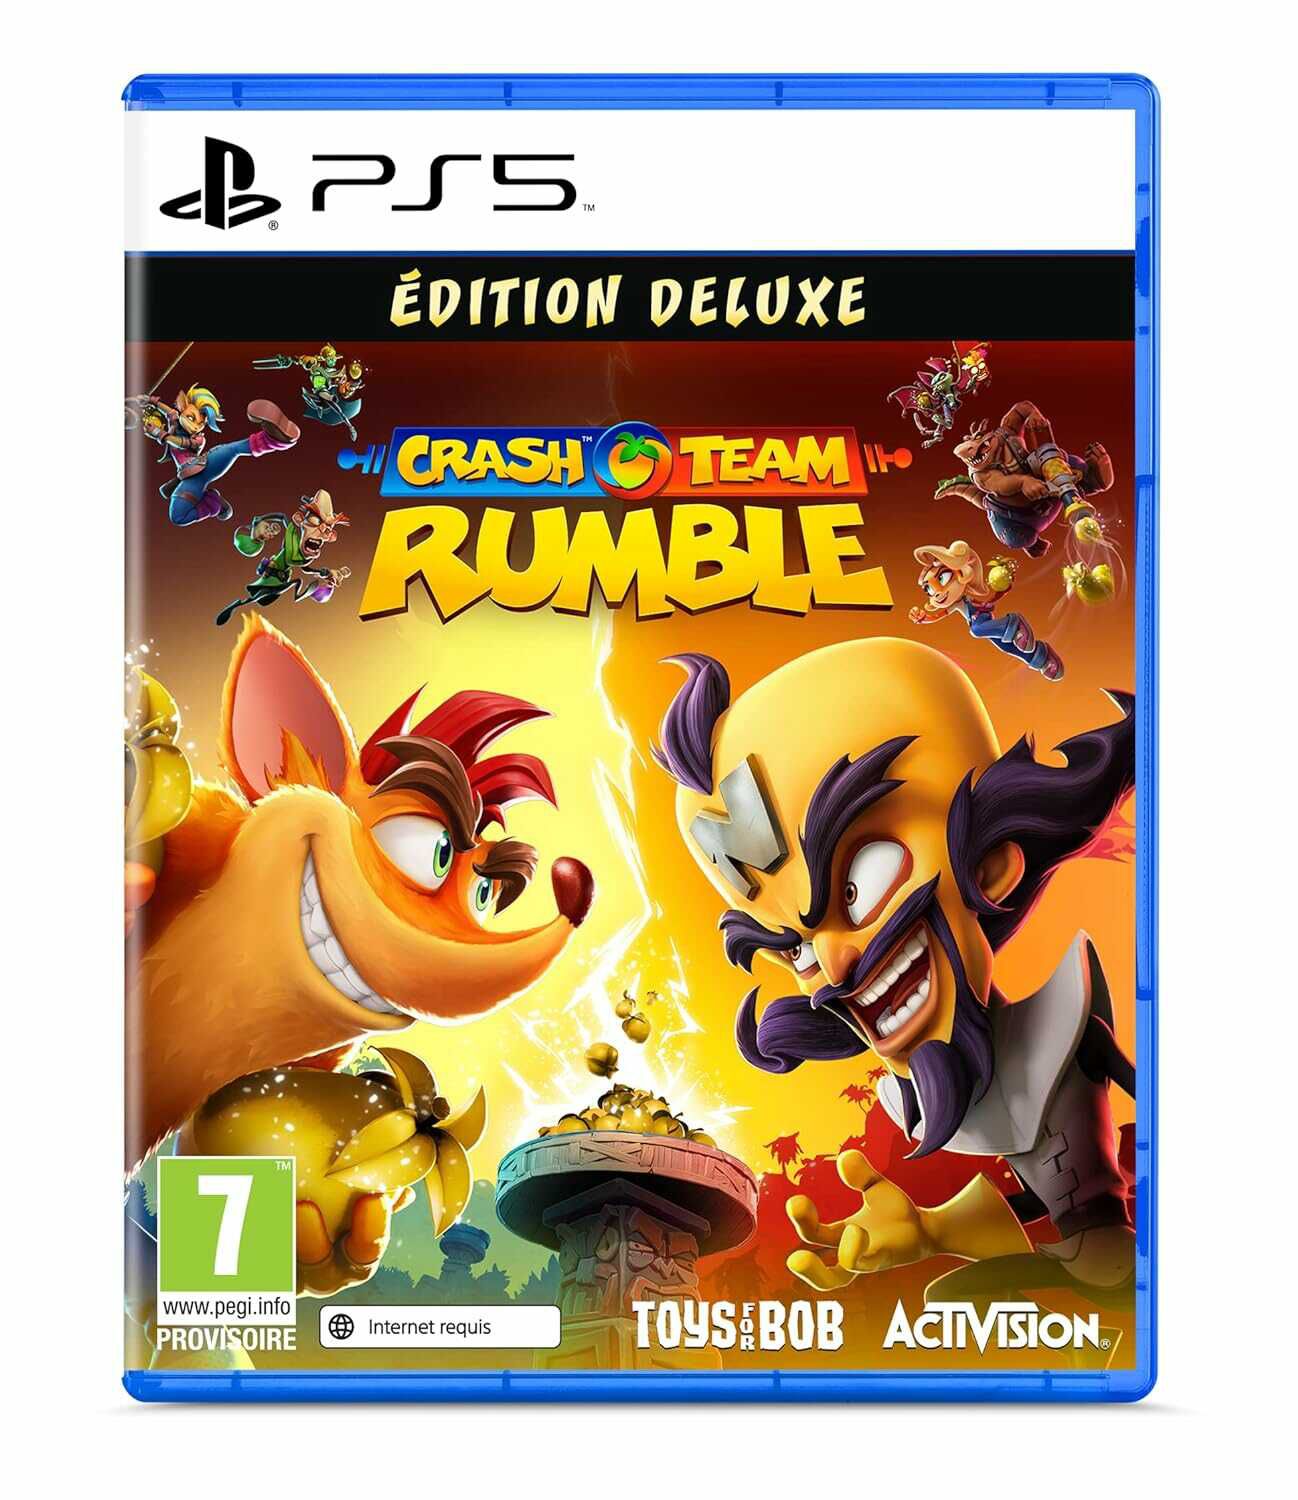 Crash Team Rumble   Deluxe Edition für 12,21€ statt 19,99€